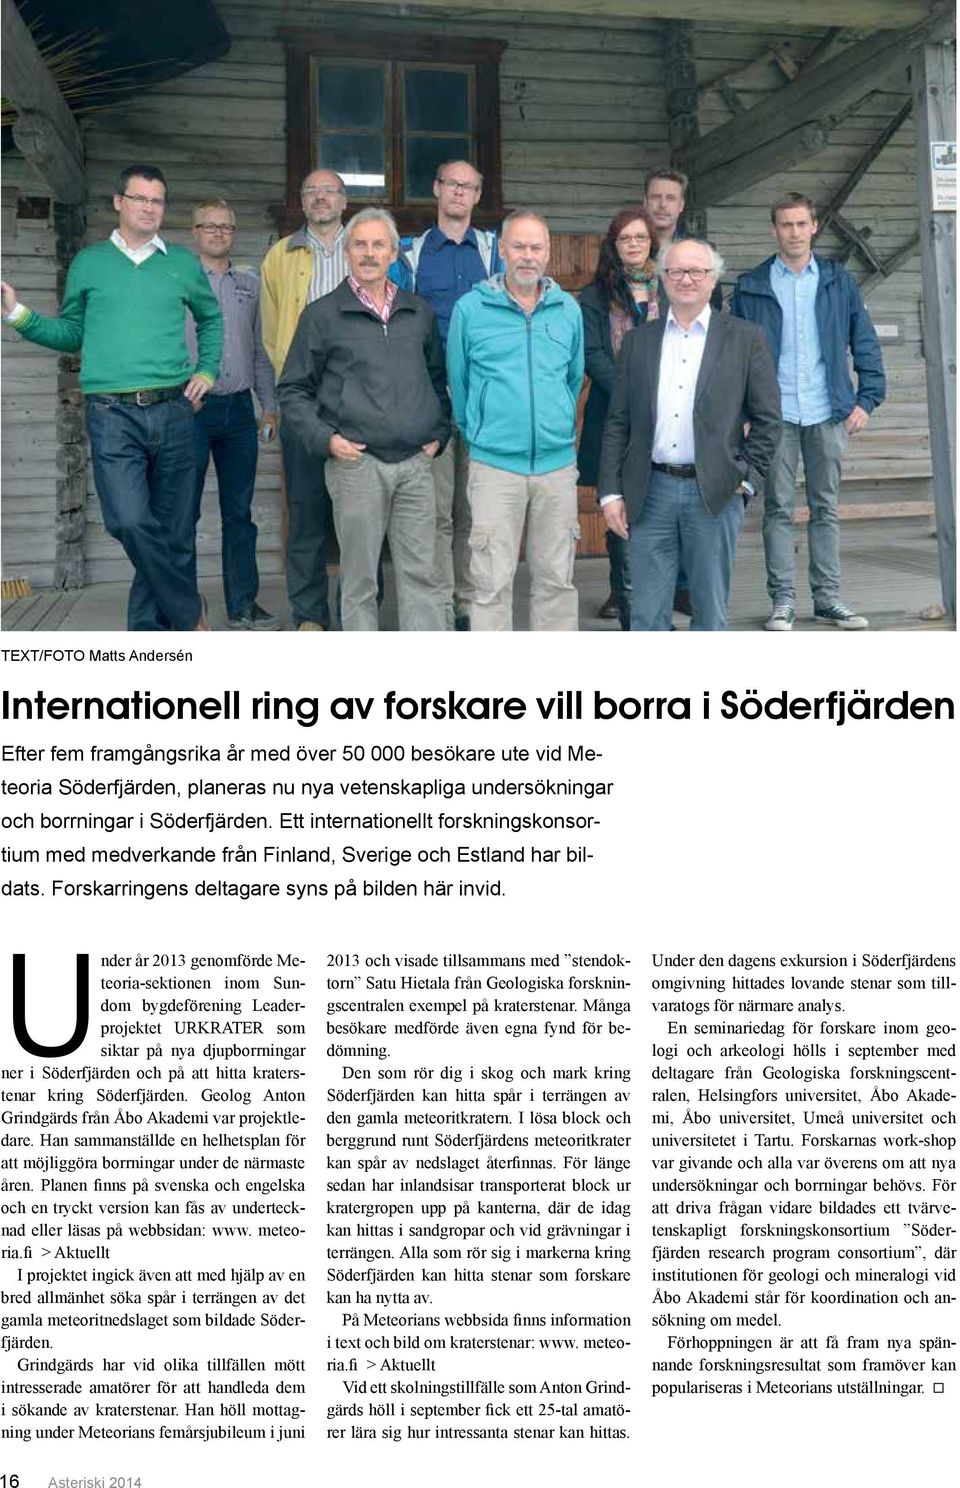 Under år 2013 genomförde Meteoria-sektionen inom Sundom bygdeförening Leaderprojektet URKRATER som siktar på nya djupborrningar ner i Söderfjärden och på att hitta kraterstenar kring Söderfjärden.